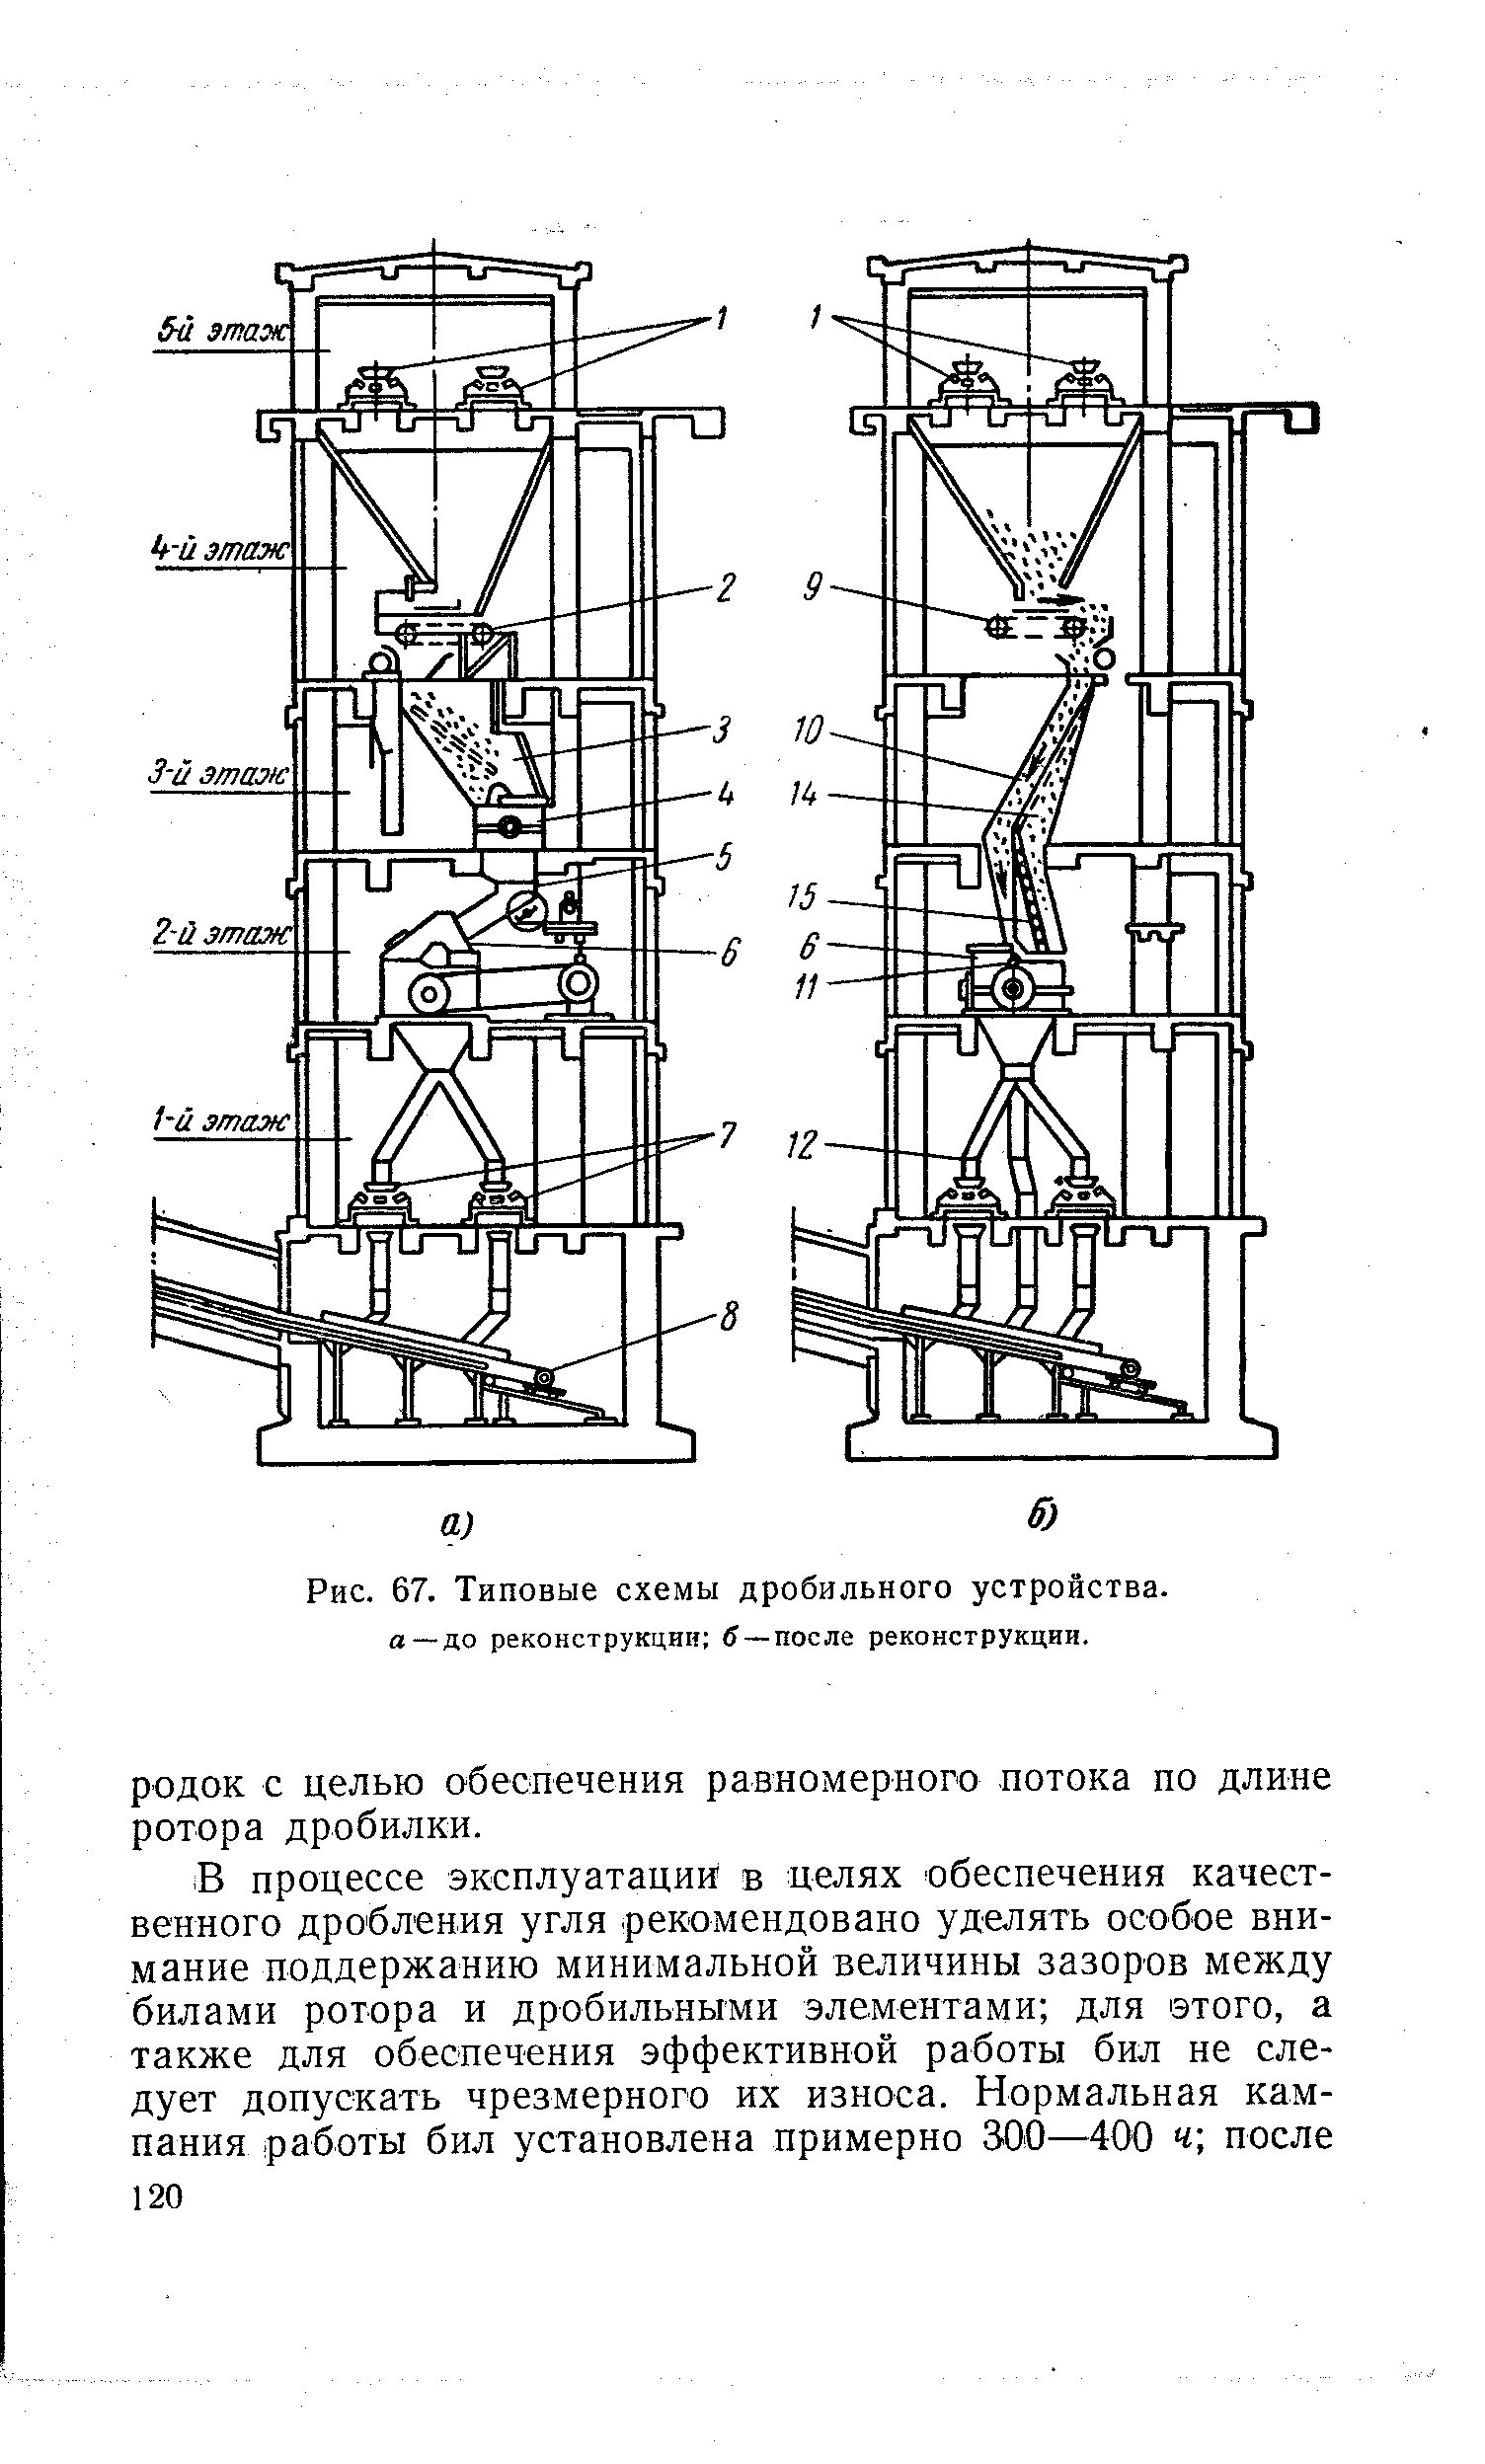 Рис. 67. Типовые схемы дробильного устройства, а —до реконструкции б —после реконструкции.
